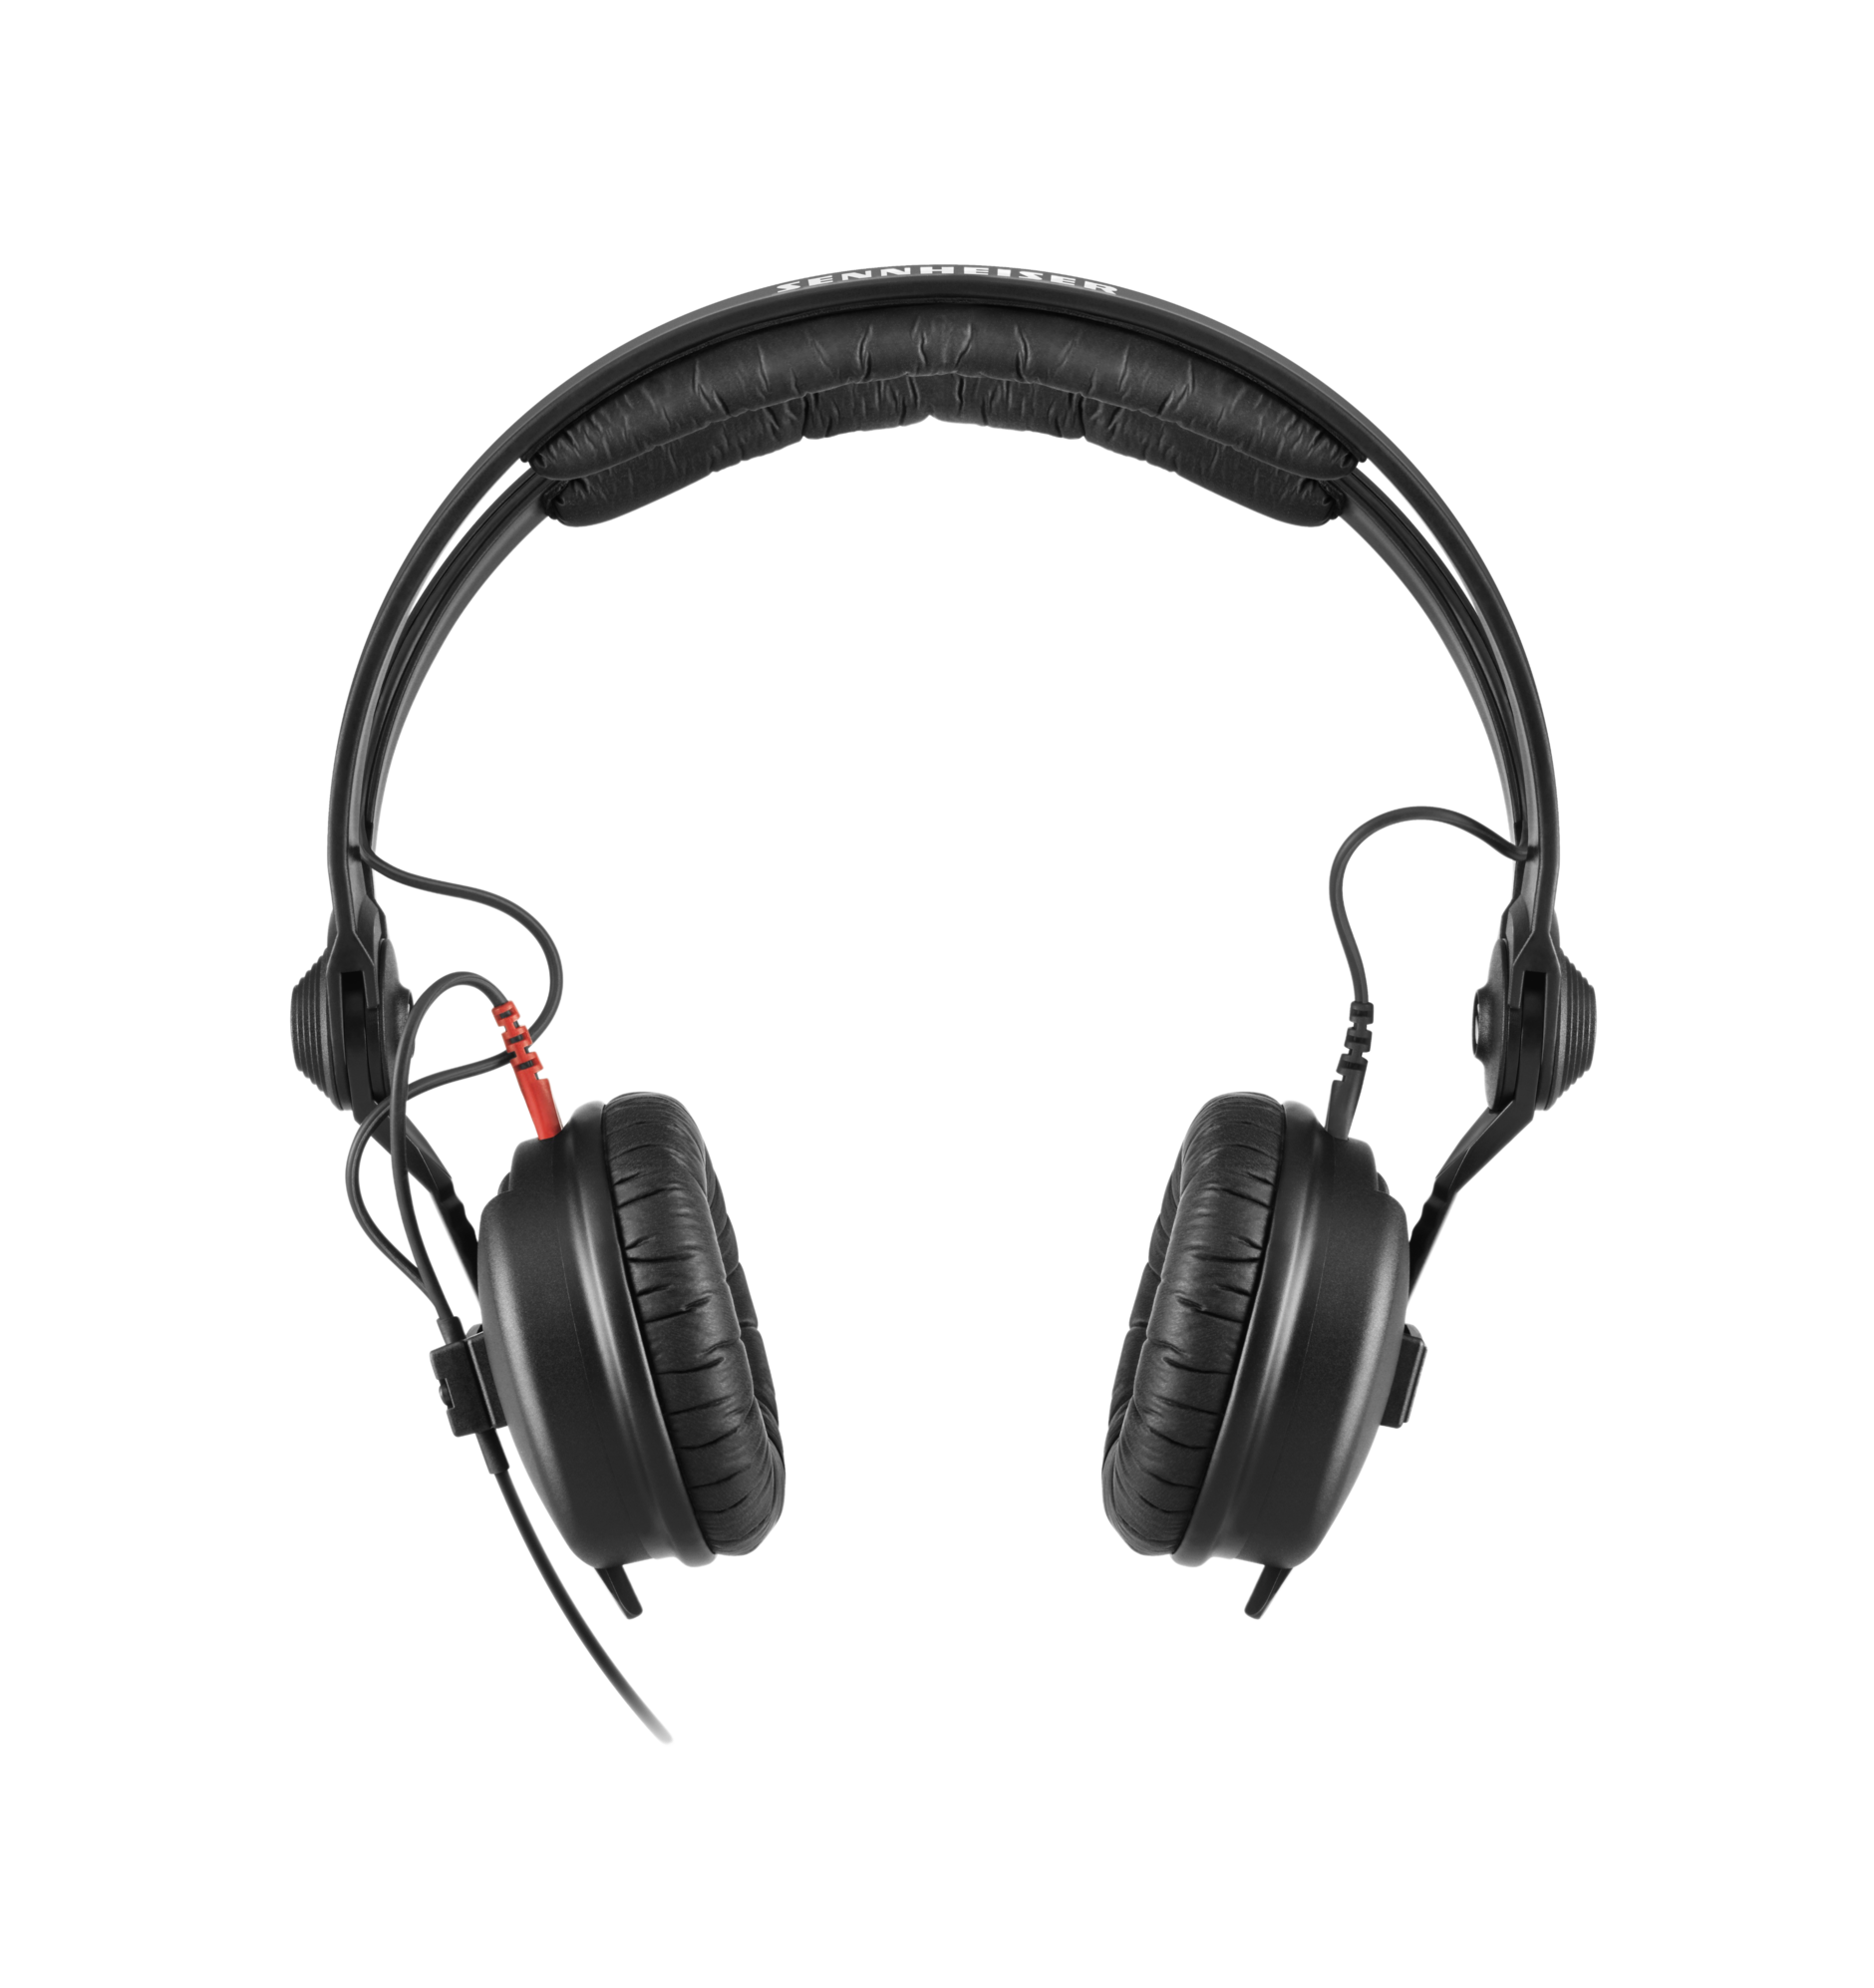 双耳式耳机HD 25 Plus | 森海塞尔- Sennheiser